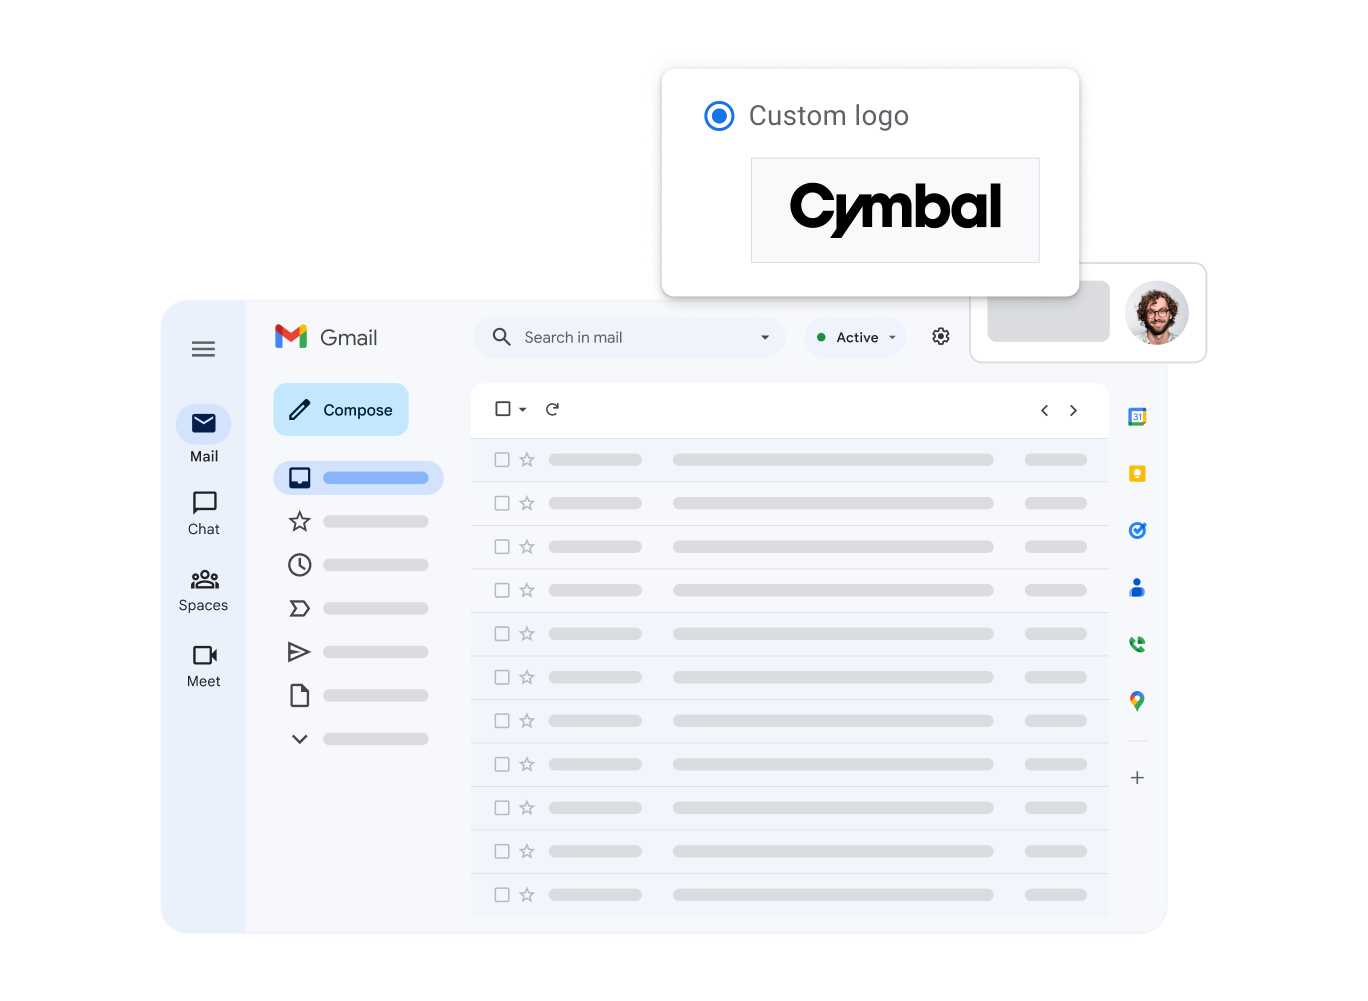 Stylizované zobrazení rozhraní Gmailu se zdůrazněným vlastním logem společnosti uživatele.